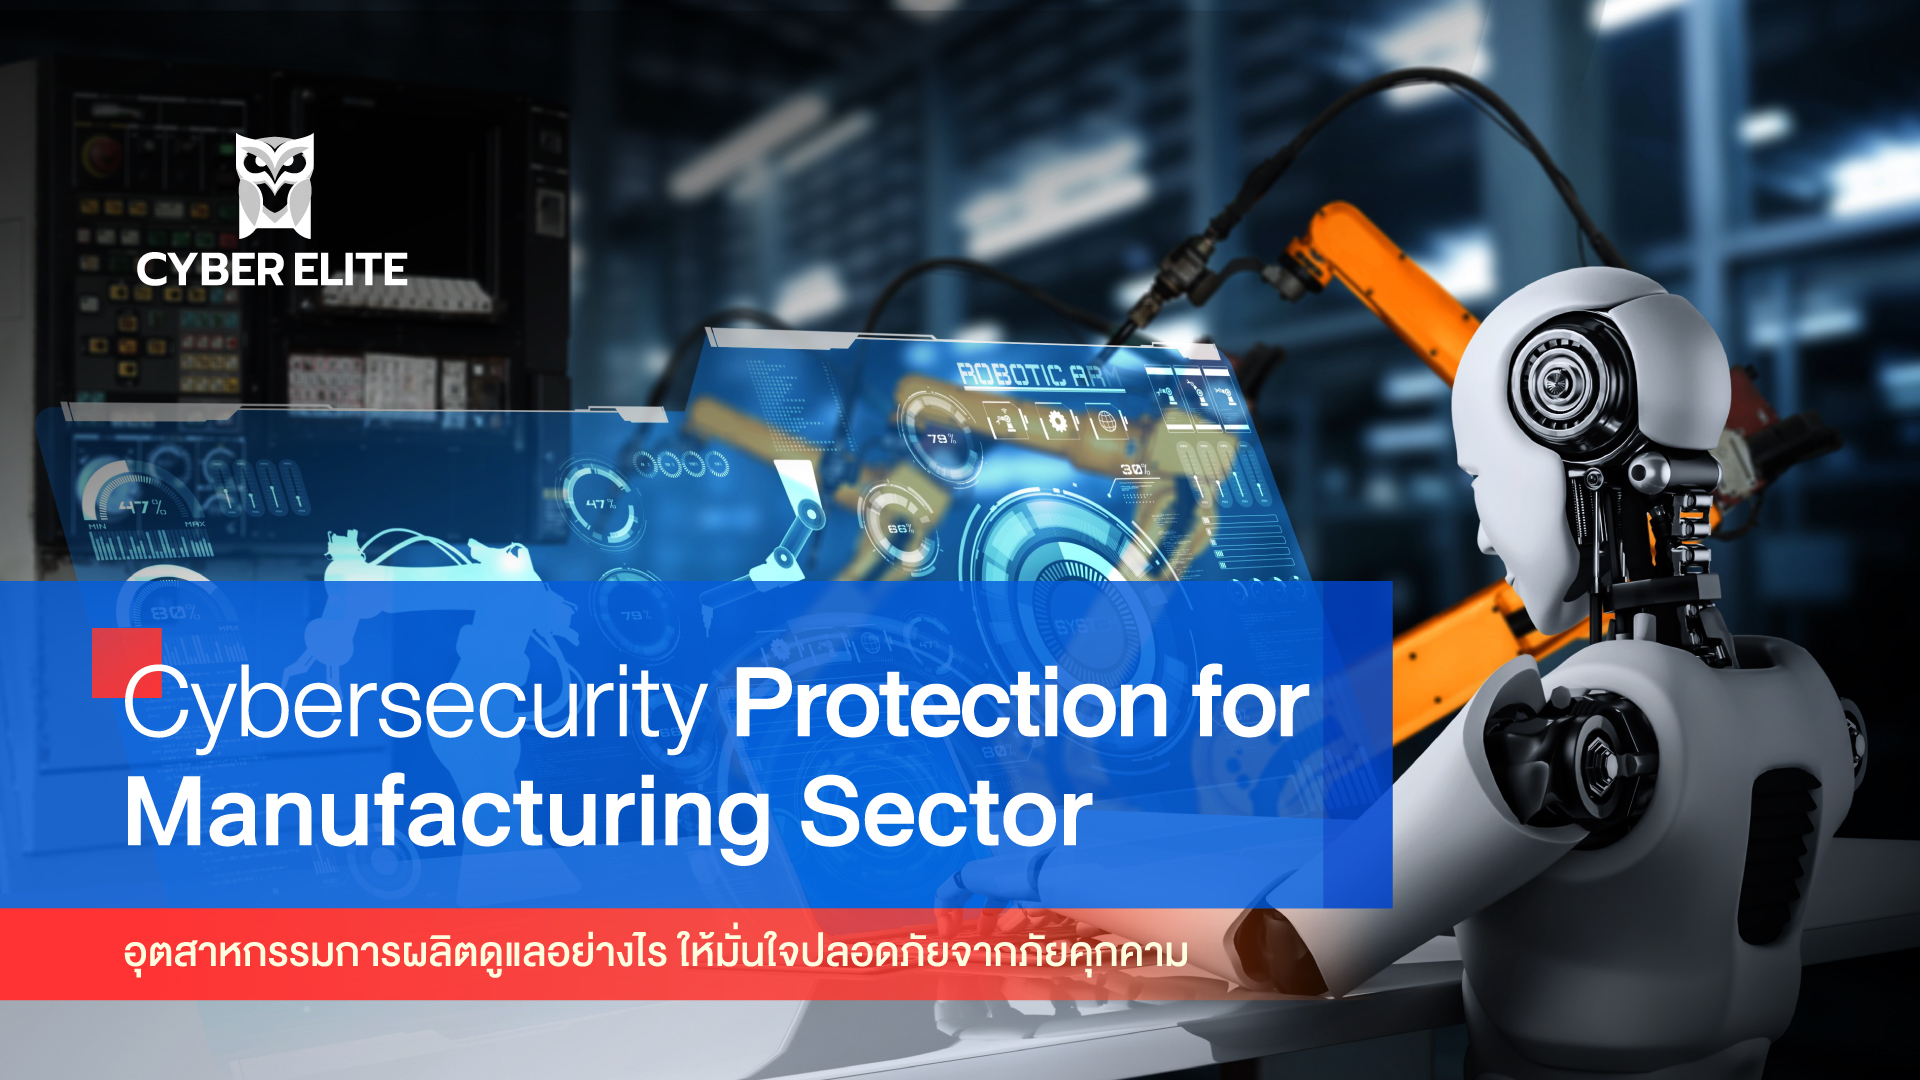 อุตสาหกรรมการผลิตดูแลอย่างไร ให้มั่นใจปลอดภัยจากภัยคุกคาม (Cybersecurity Protection for Manufacturing Sector)